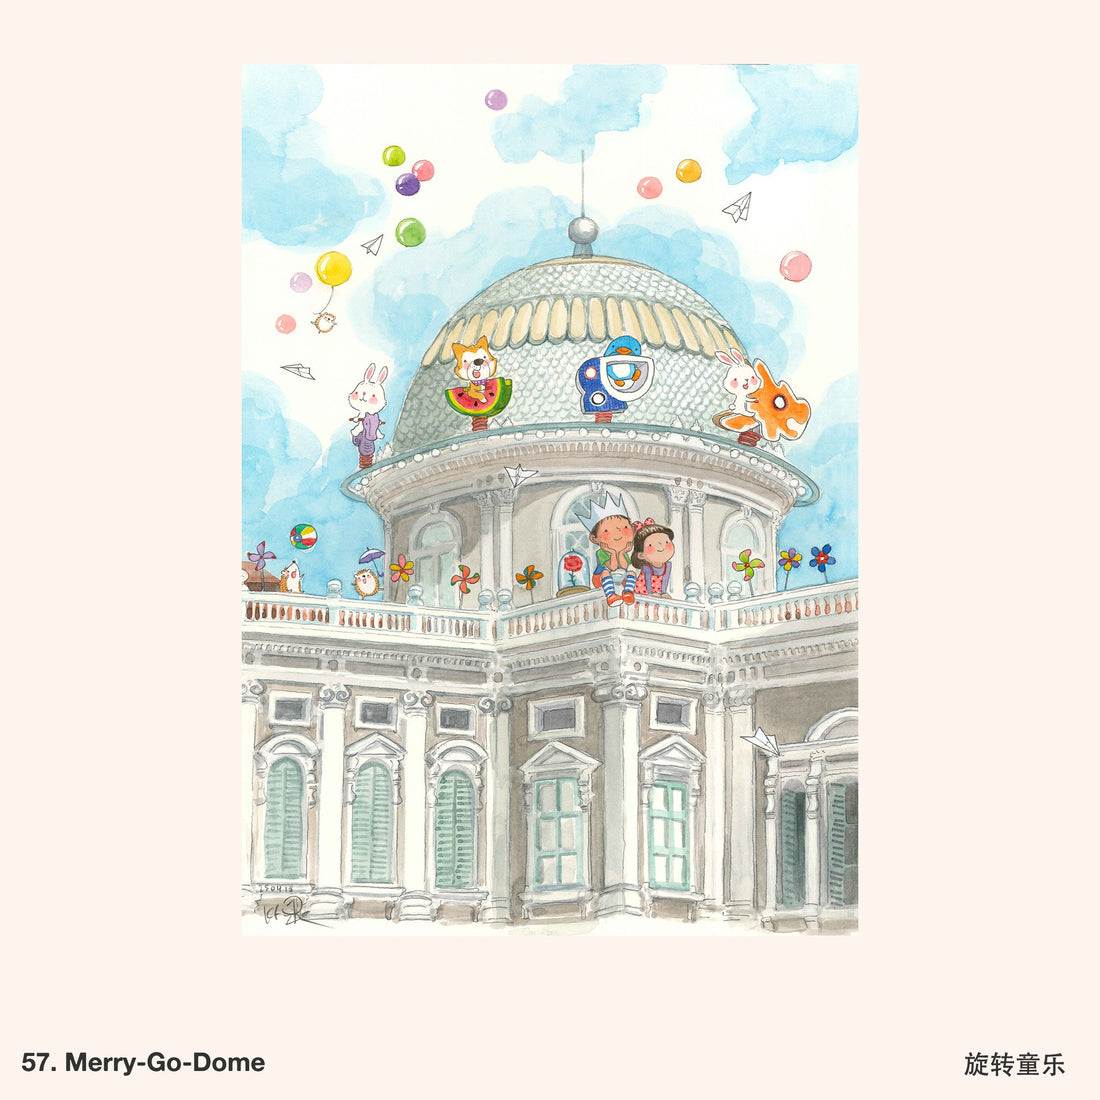 57. Merry-Go-Dome Artwork